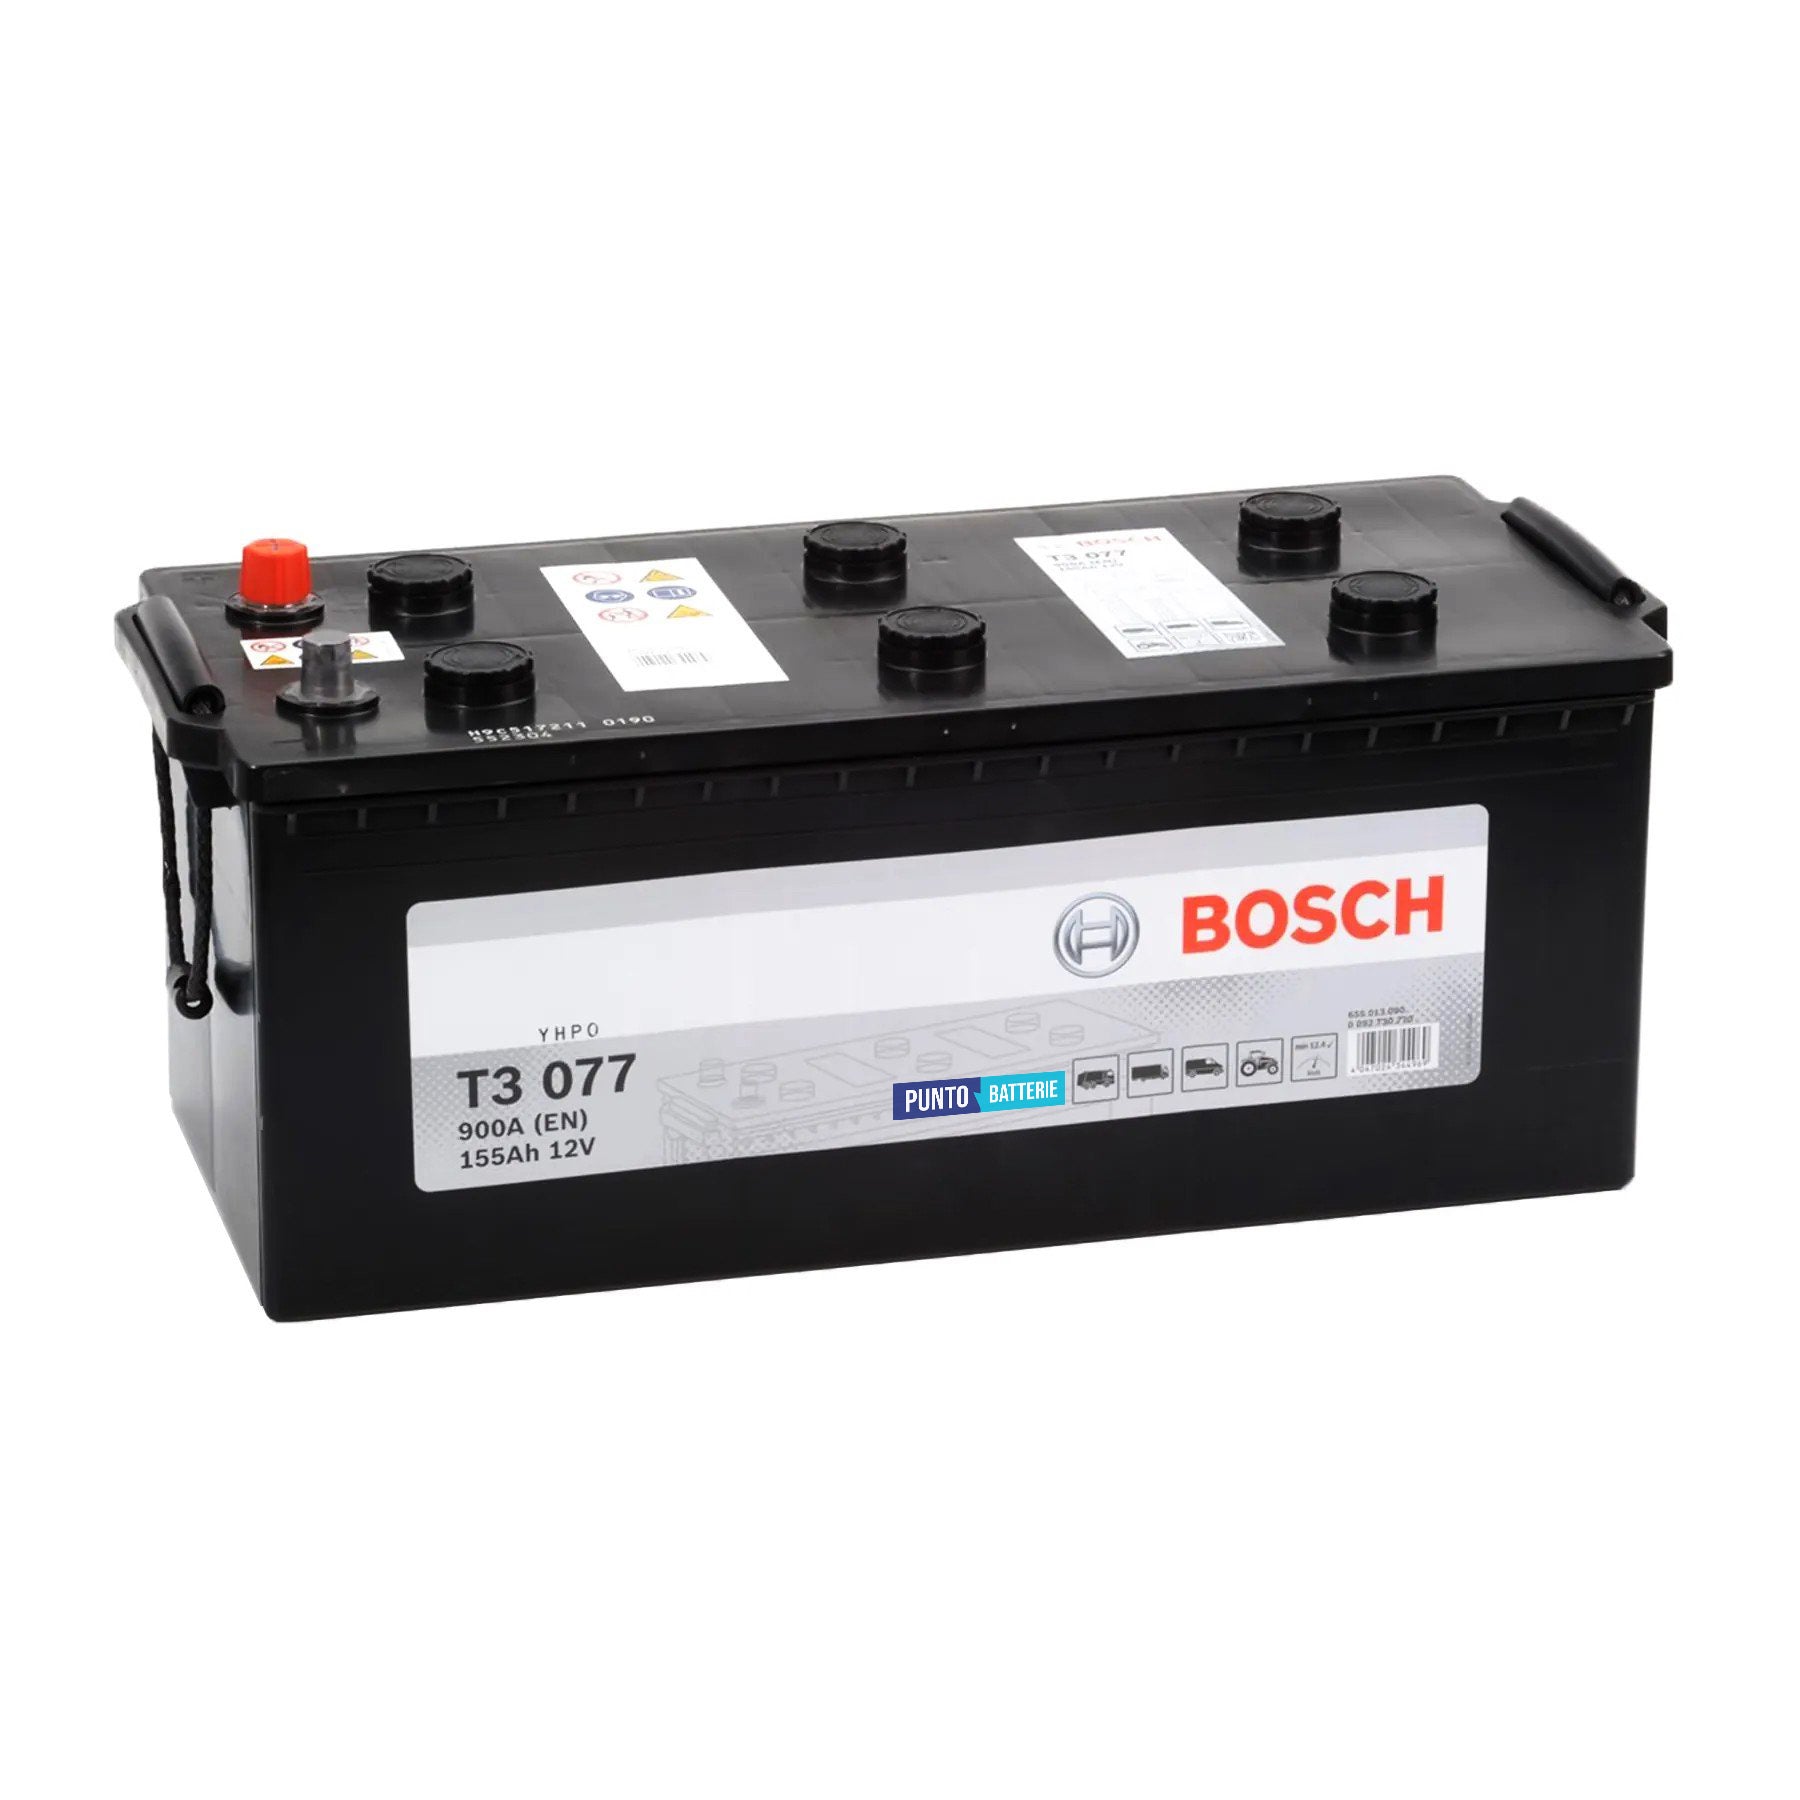 Batteria originale Bosch T3 T3077, dimensioni 513 x 223 x 223, polo positivo a sinistra, 12 volt, 155 amperora, 900 ampere. Batteria per camion e veicoli pesanti.